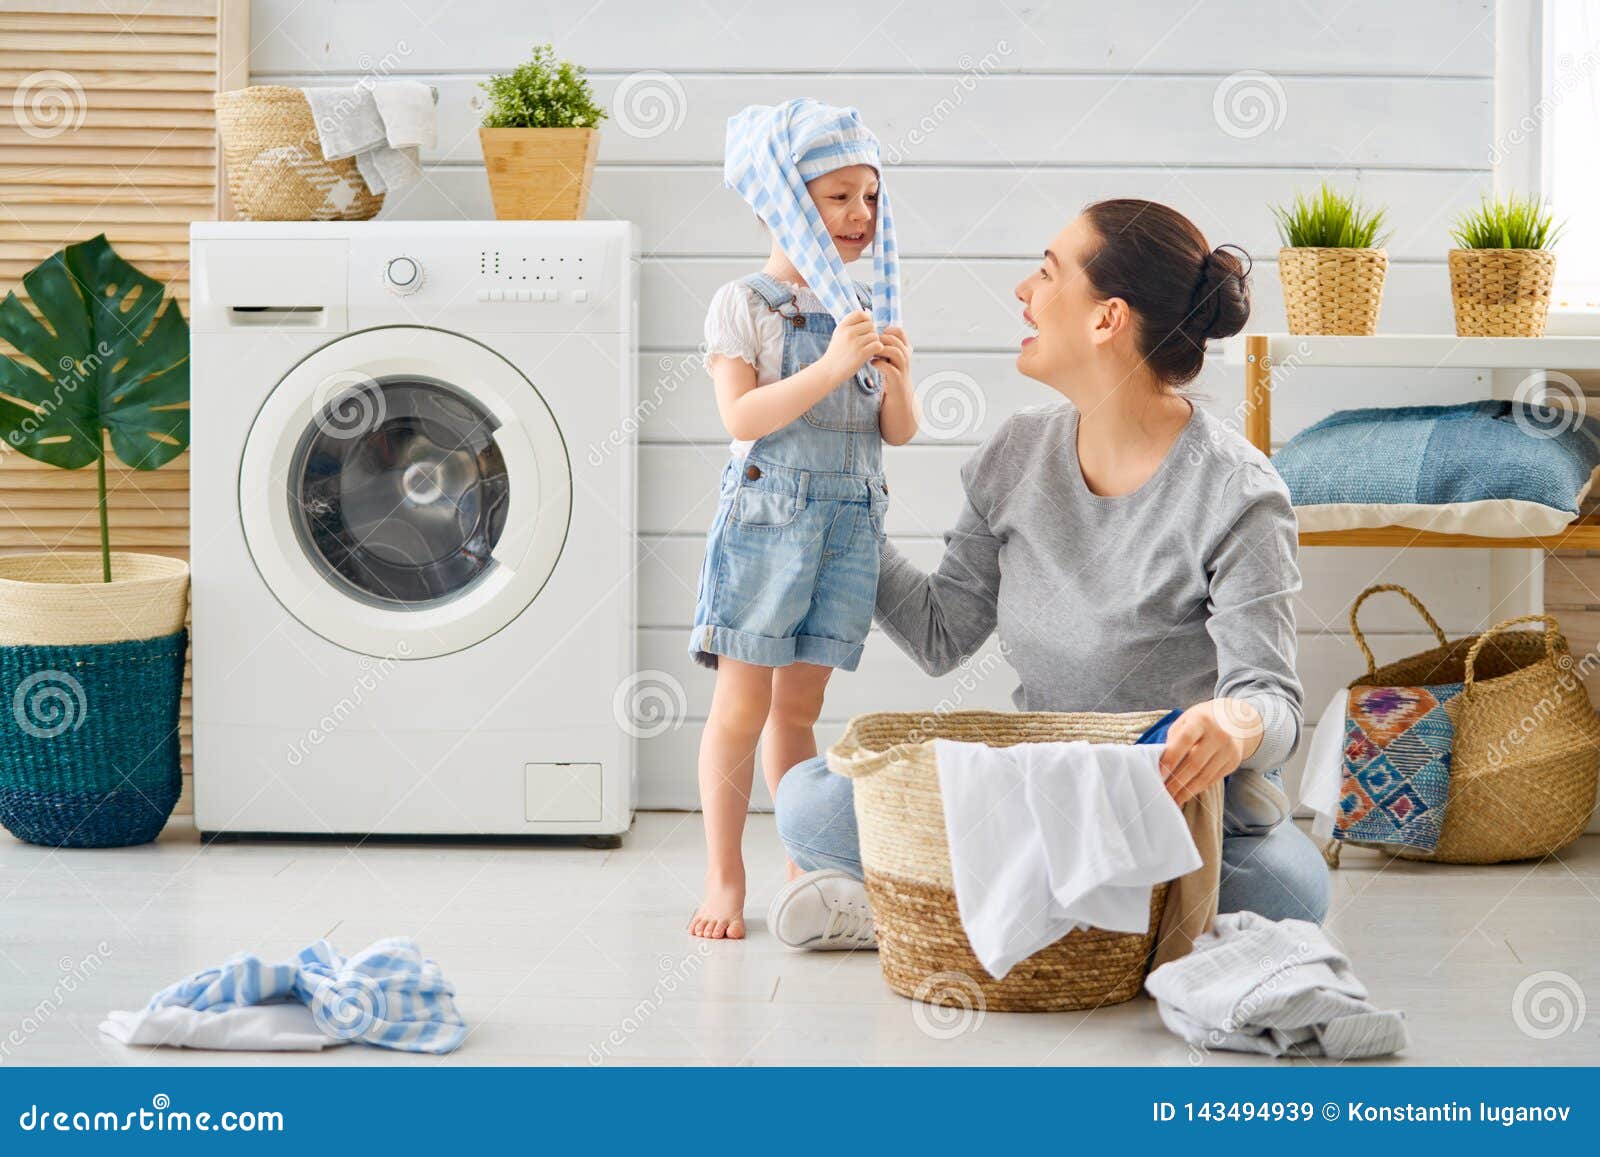 Did the laundry. Семья стирка. Стиральная машина и семья. Семья стирает. Девушка со стиркой дети.